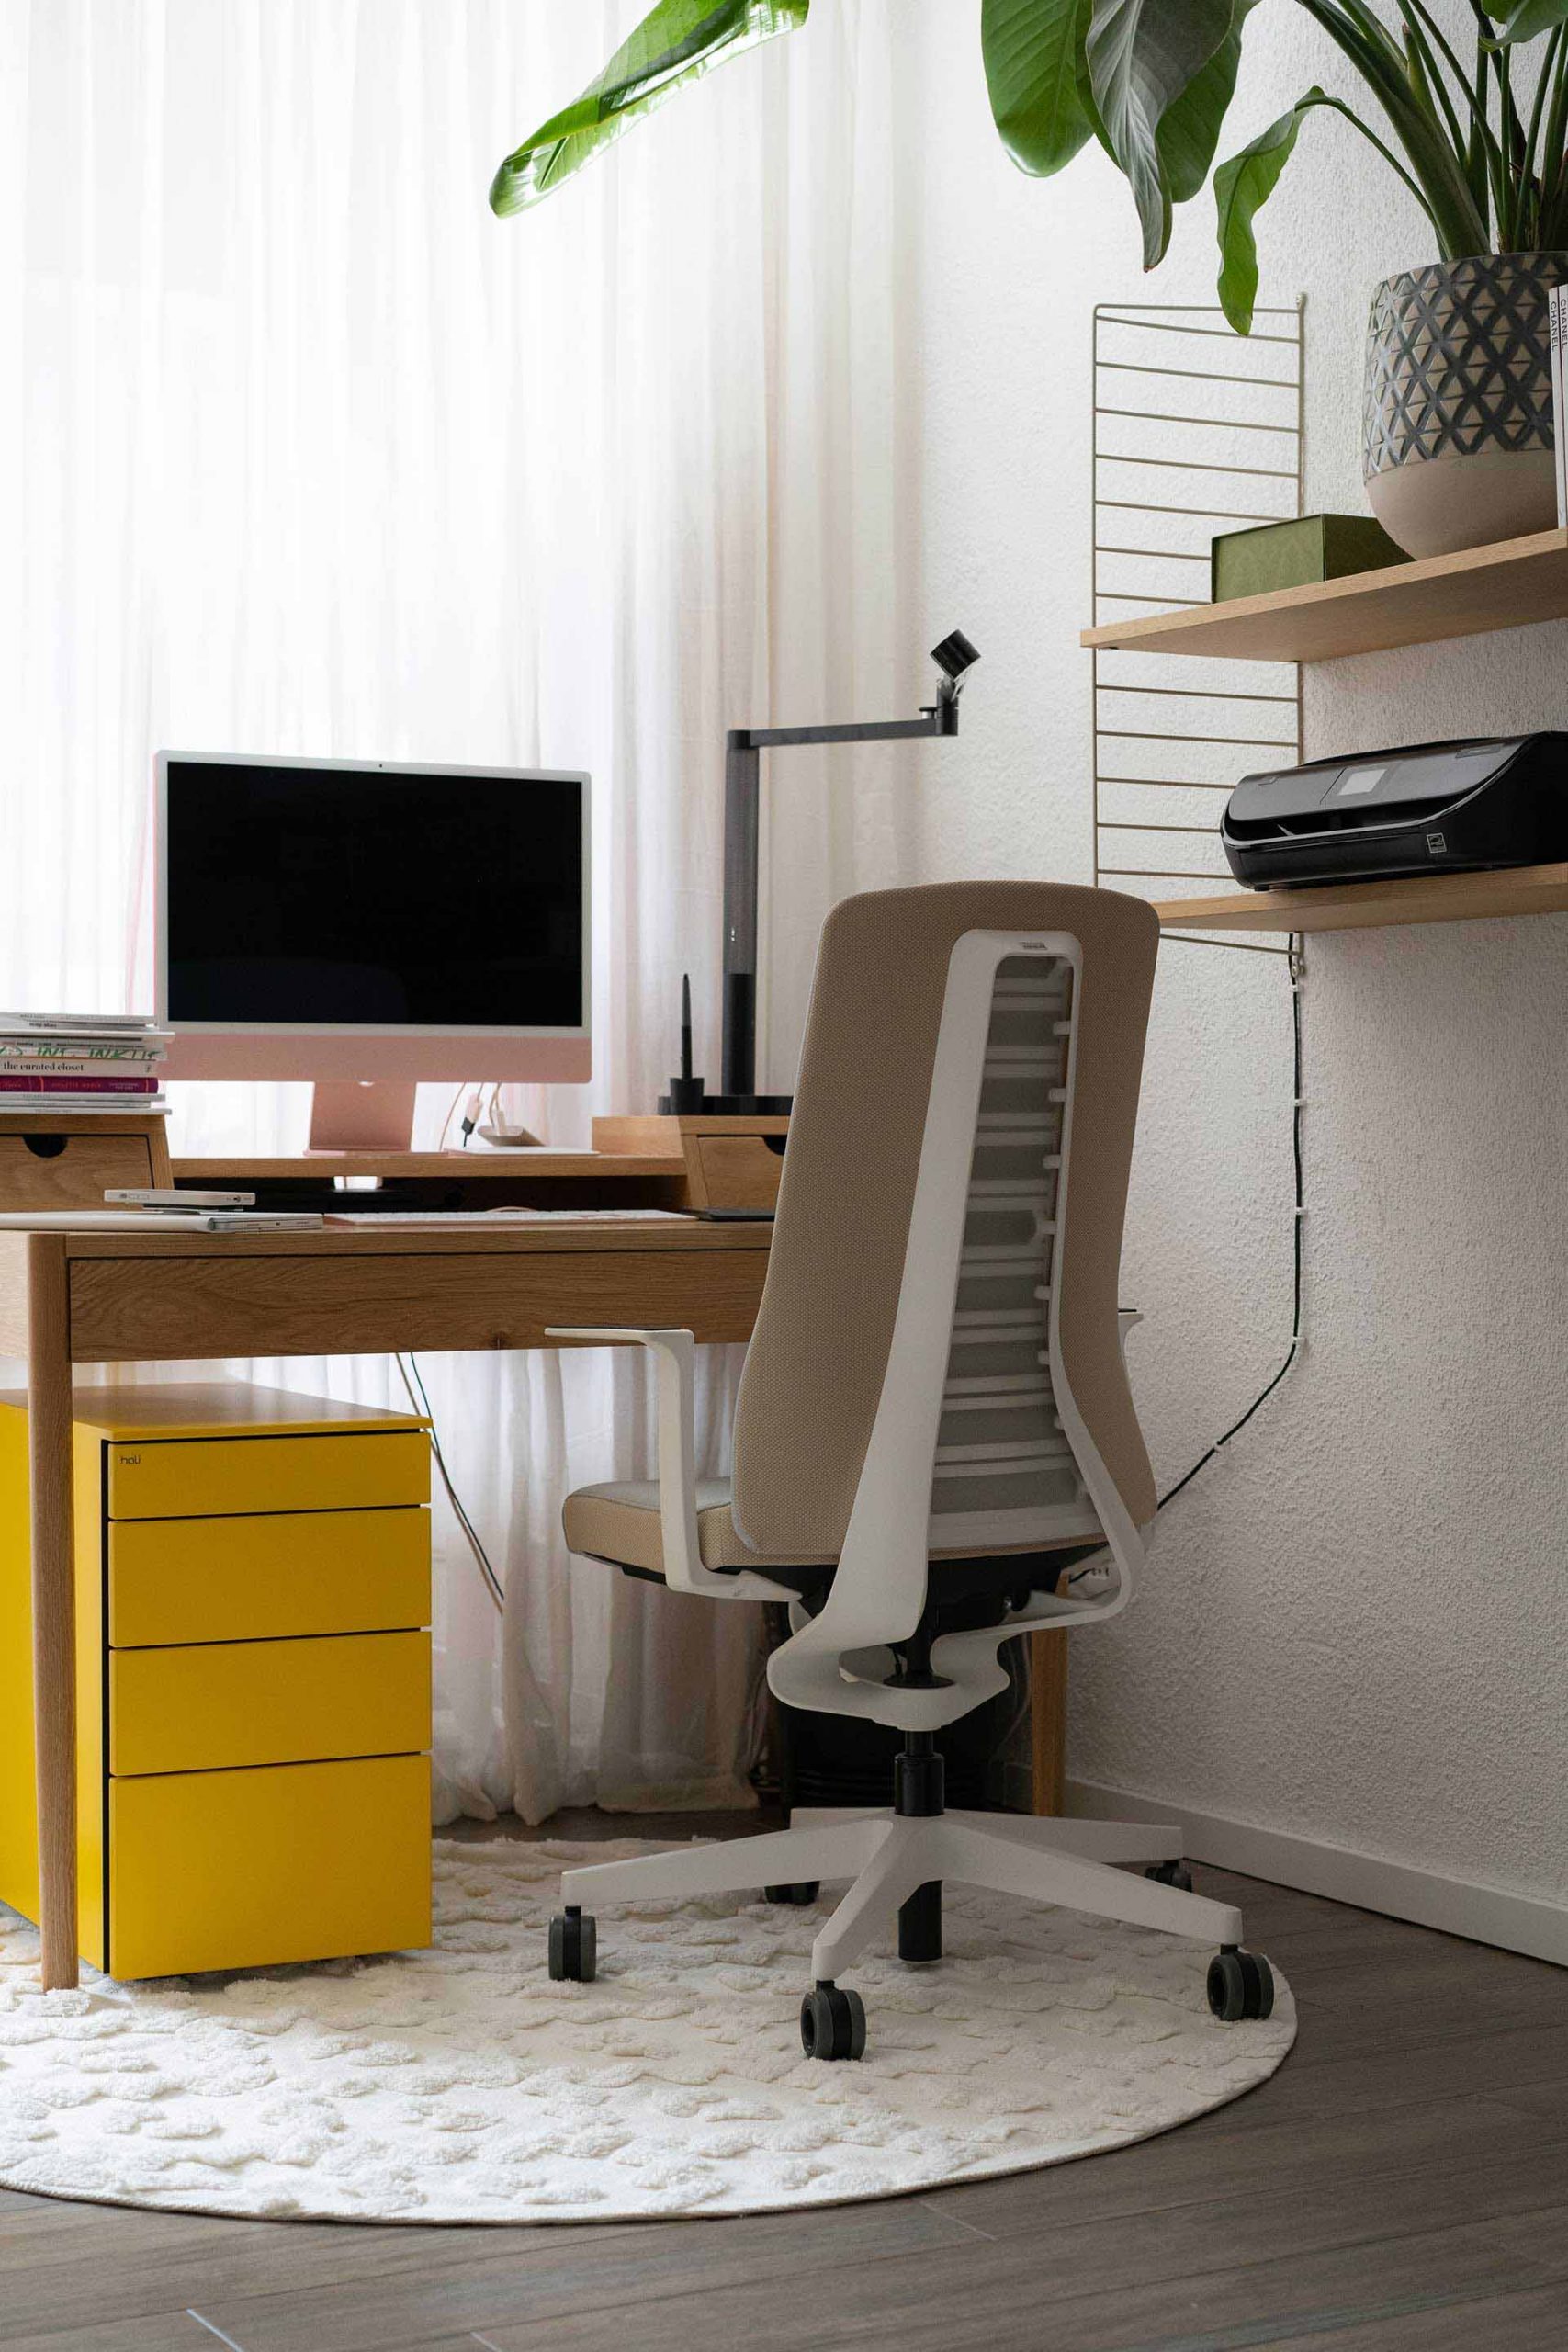 Anzeige. Frische Farbakzente im Home-Office sorgen für eine schöne Atmosphäre am Arbeitsplatz – hol dir den Look mit dem gelben Rollcontainer direkt nach Hause!